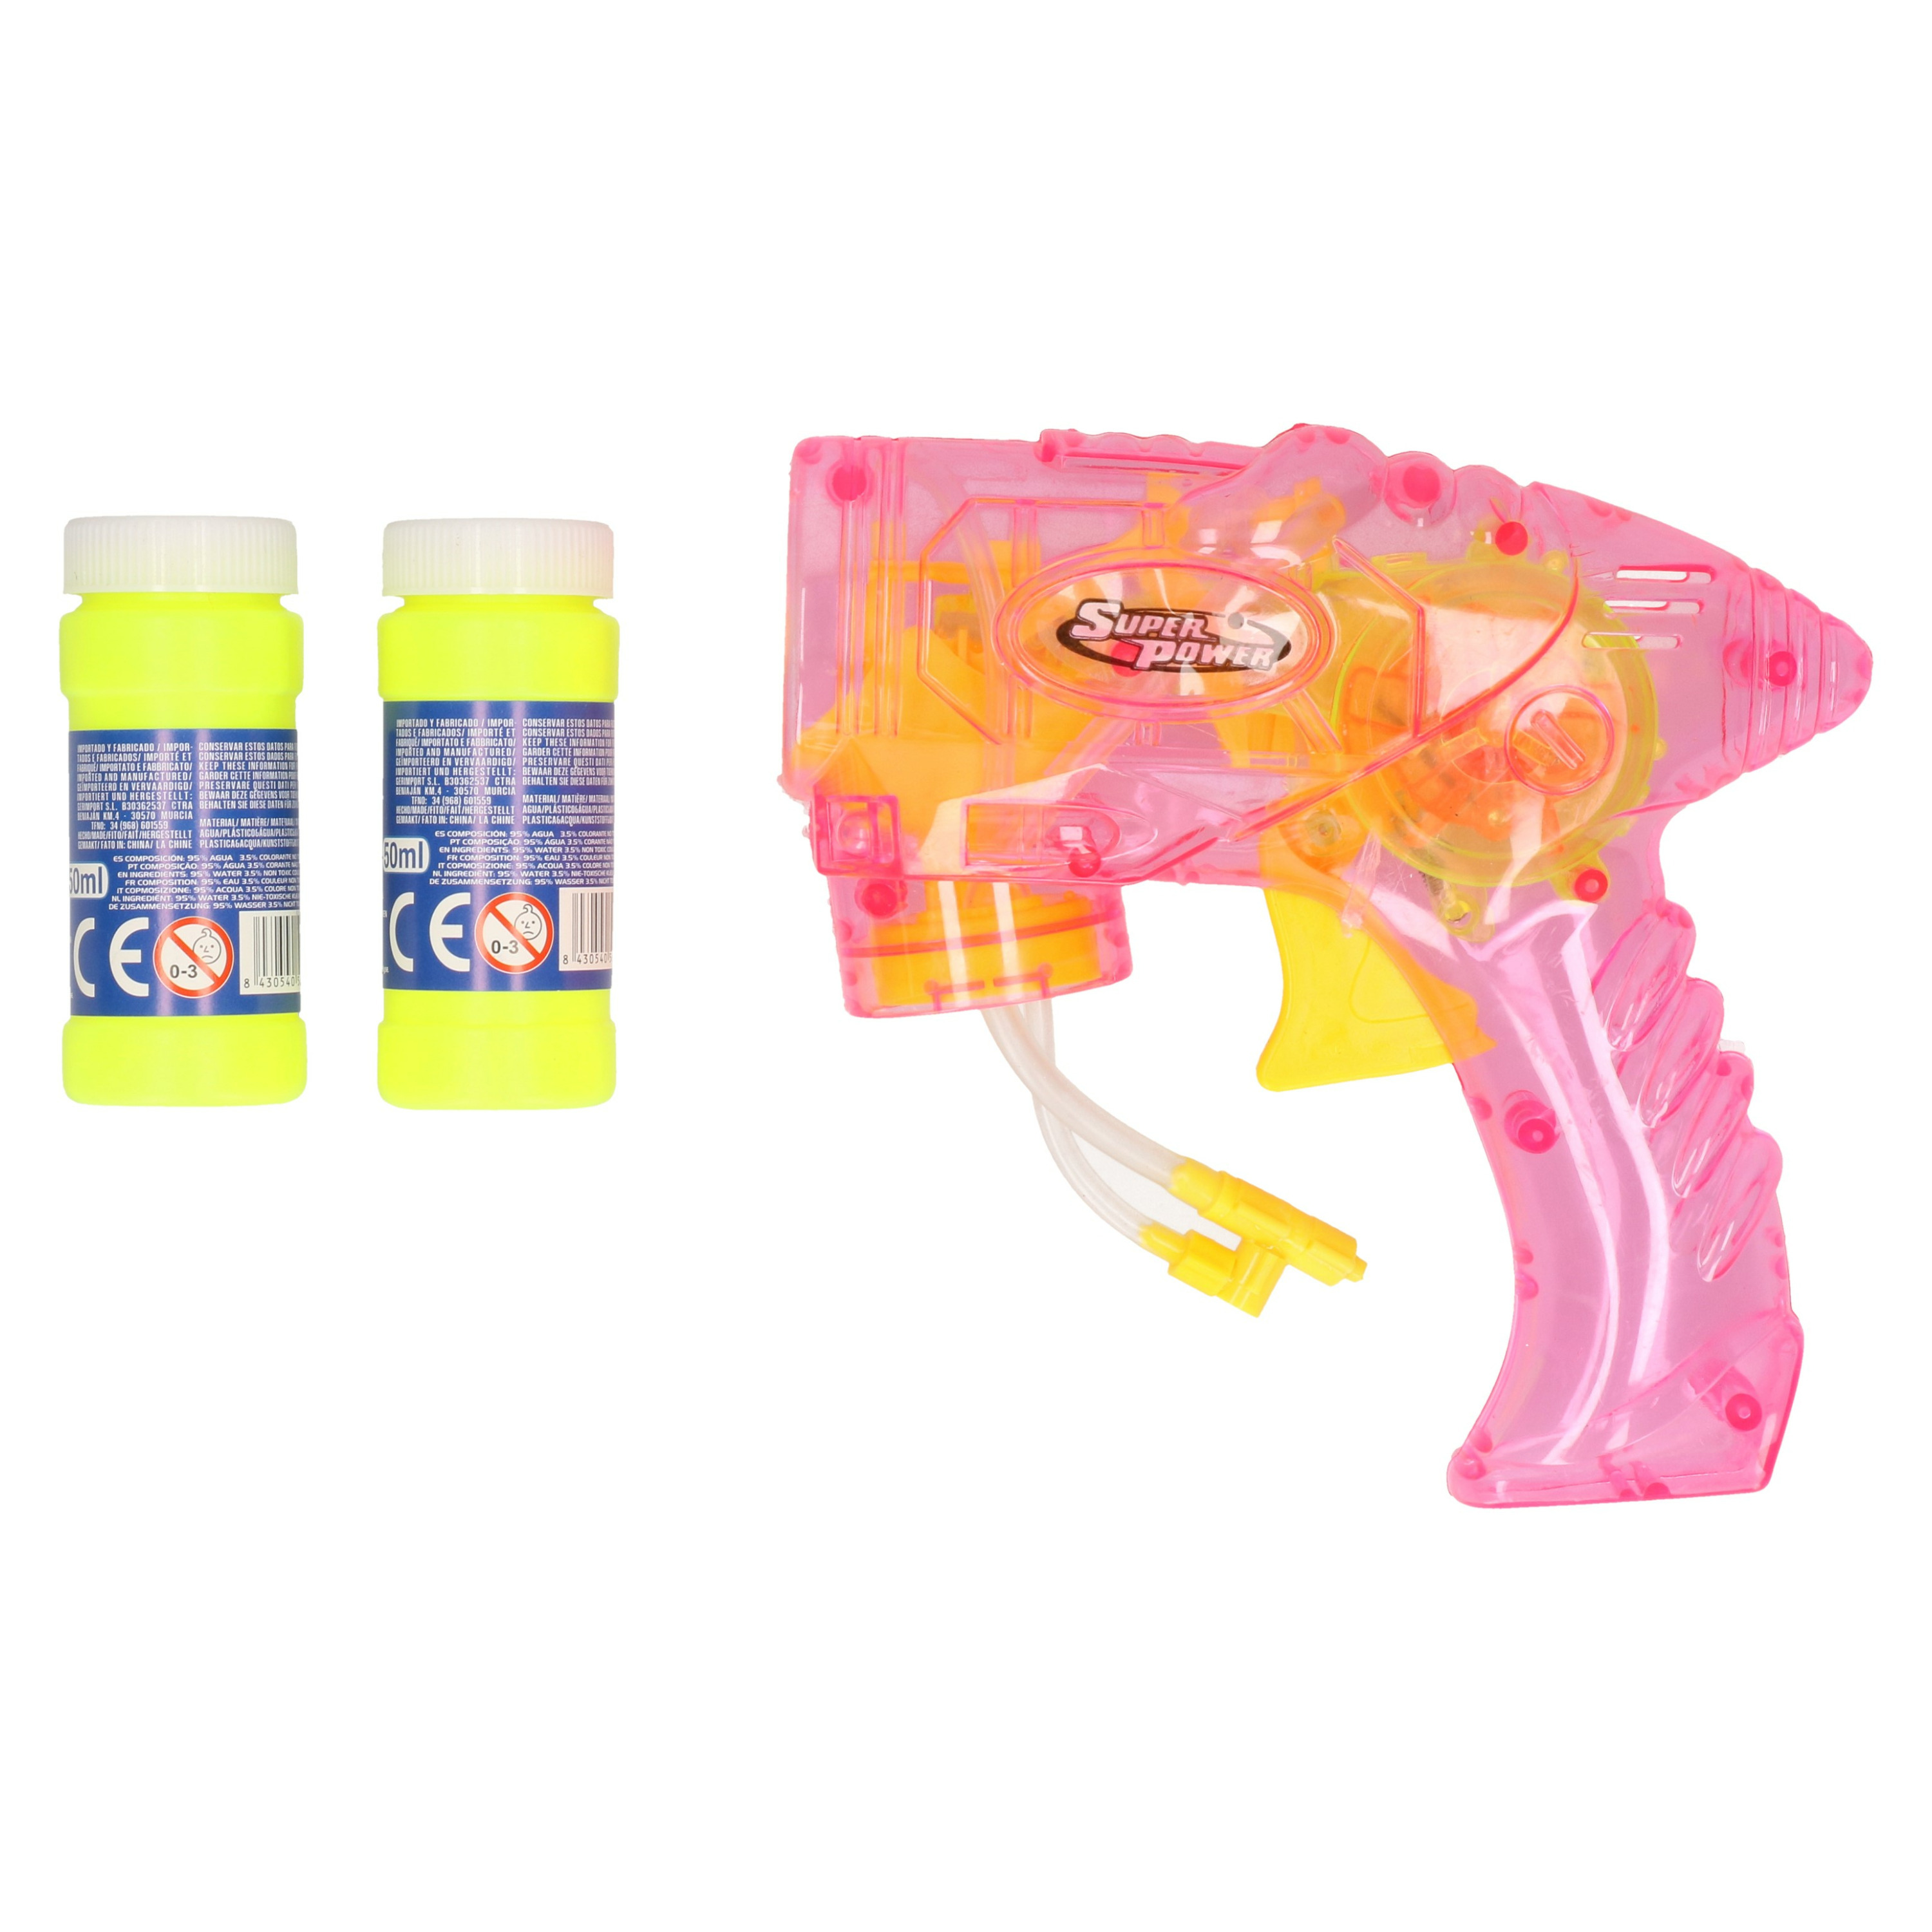 Bellenblaas speelgoed pistool - met vullingen - roze - 15 cm - plastic - bellen blazen